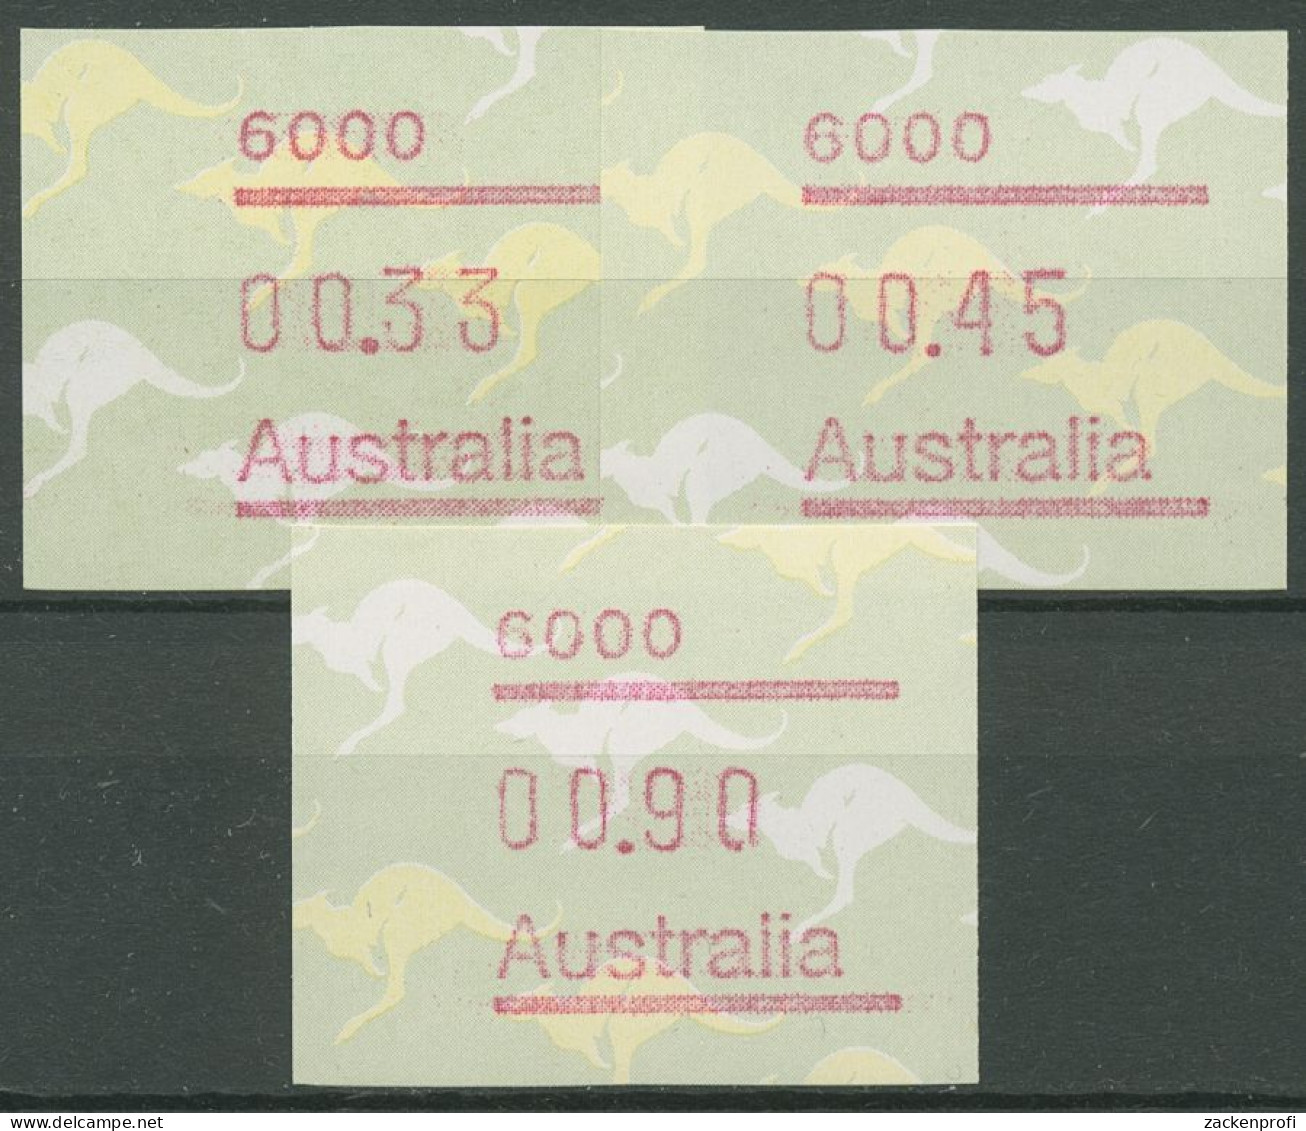 Australien 1985 Känguruh Tastensatz Automatenmarke 4 S1, 6000 Postfrisch - Vignette [ATM]